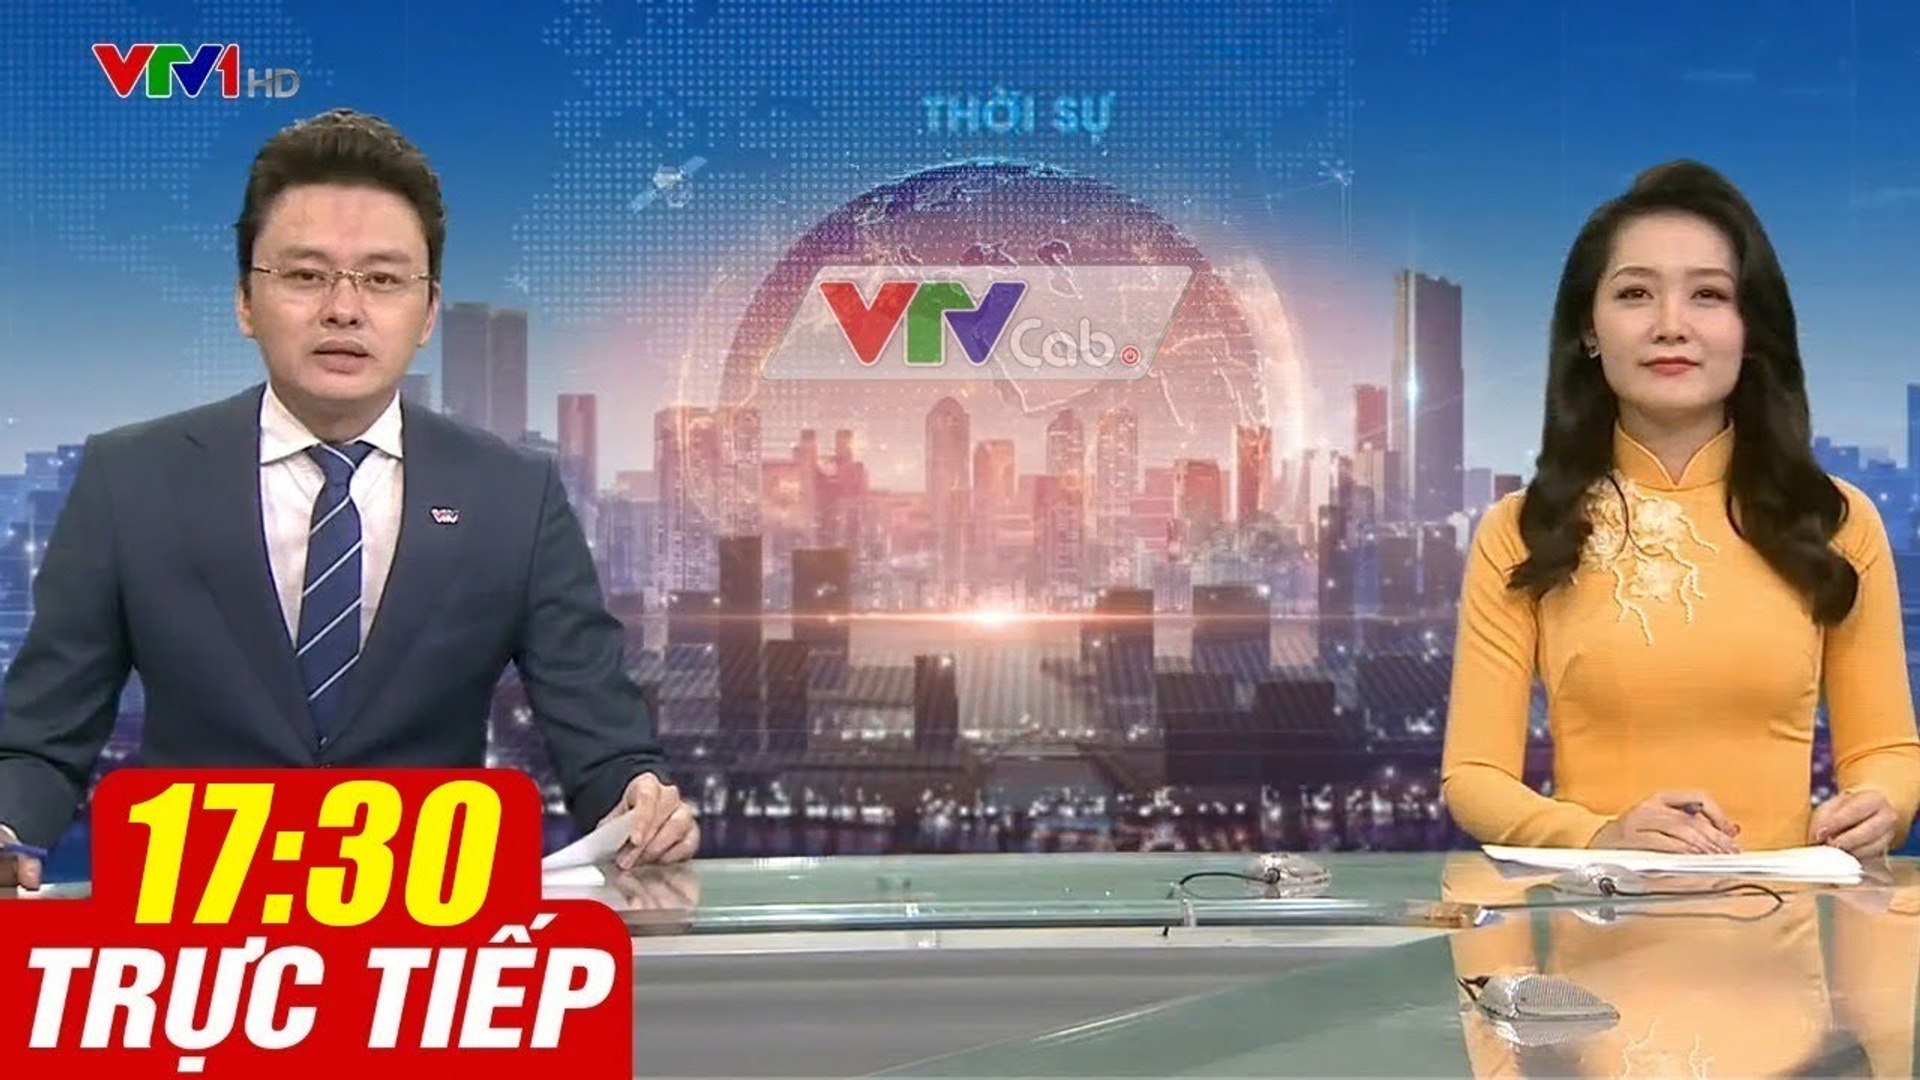 Trực Tiếp VIỆT NAM HÔM NAY 17h30 ngày 28.09.2020  Tin tức thời sự VTV1 mới nhất hôm nay